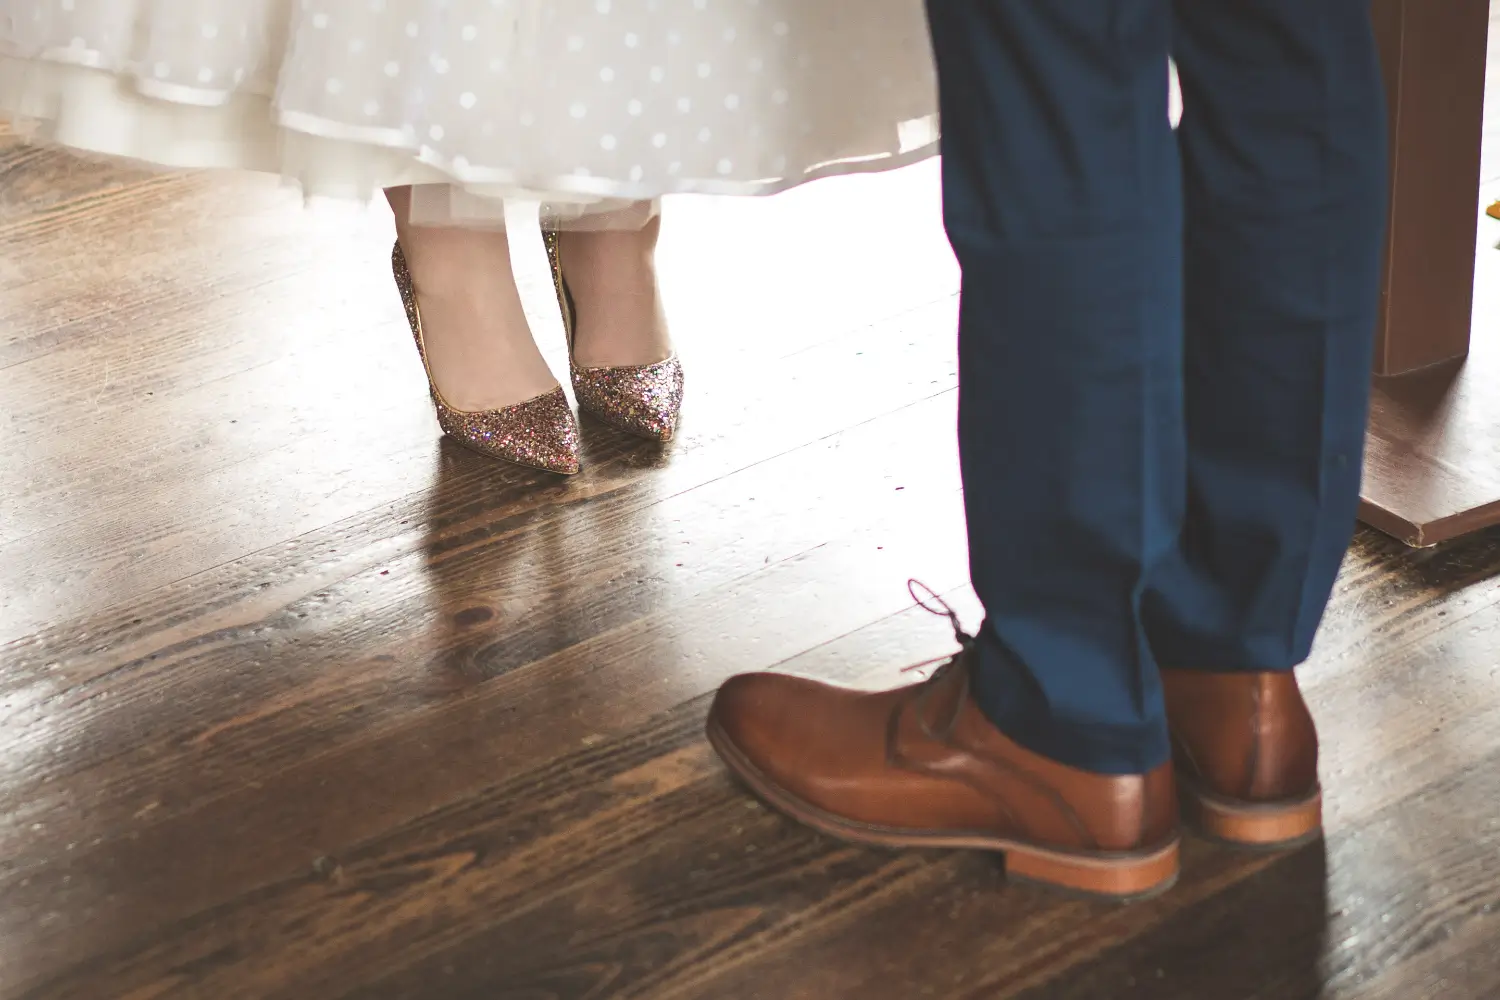 Dancing in wedding shoes